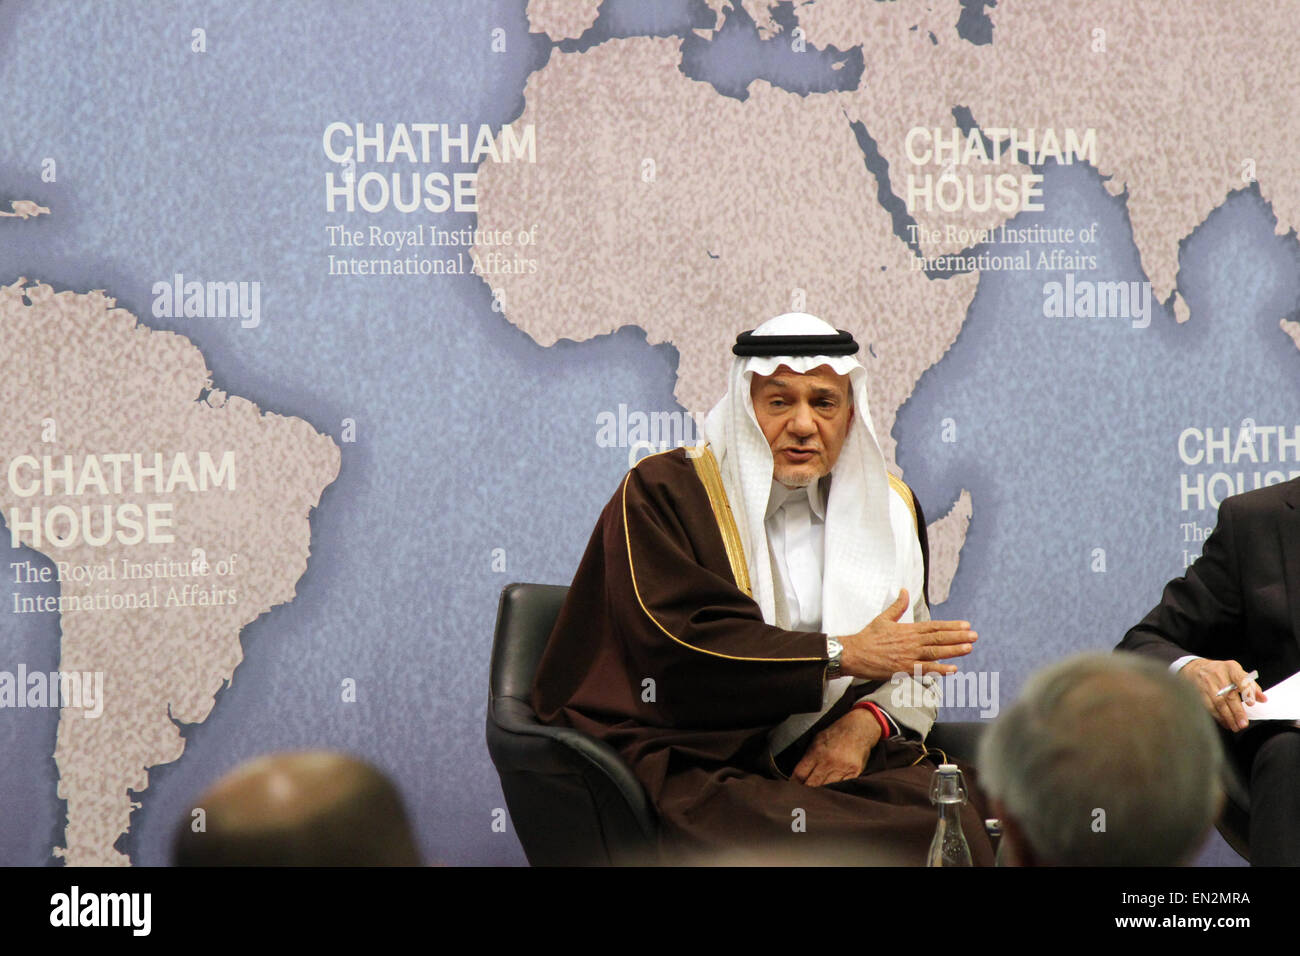 El veterano diplomático saudí príncipe Turki bin Faisal Al Saud, hablando en el think tank Chatham House en Londres, Reino Unido el 18 de marzo de 2015. Foto de stock